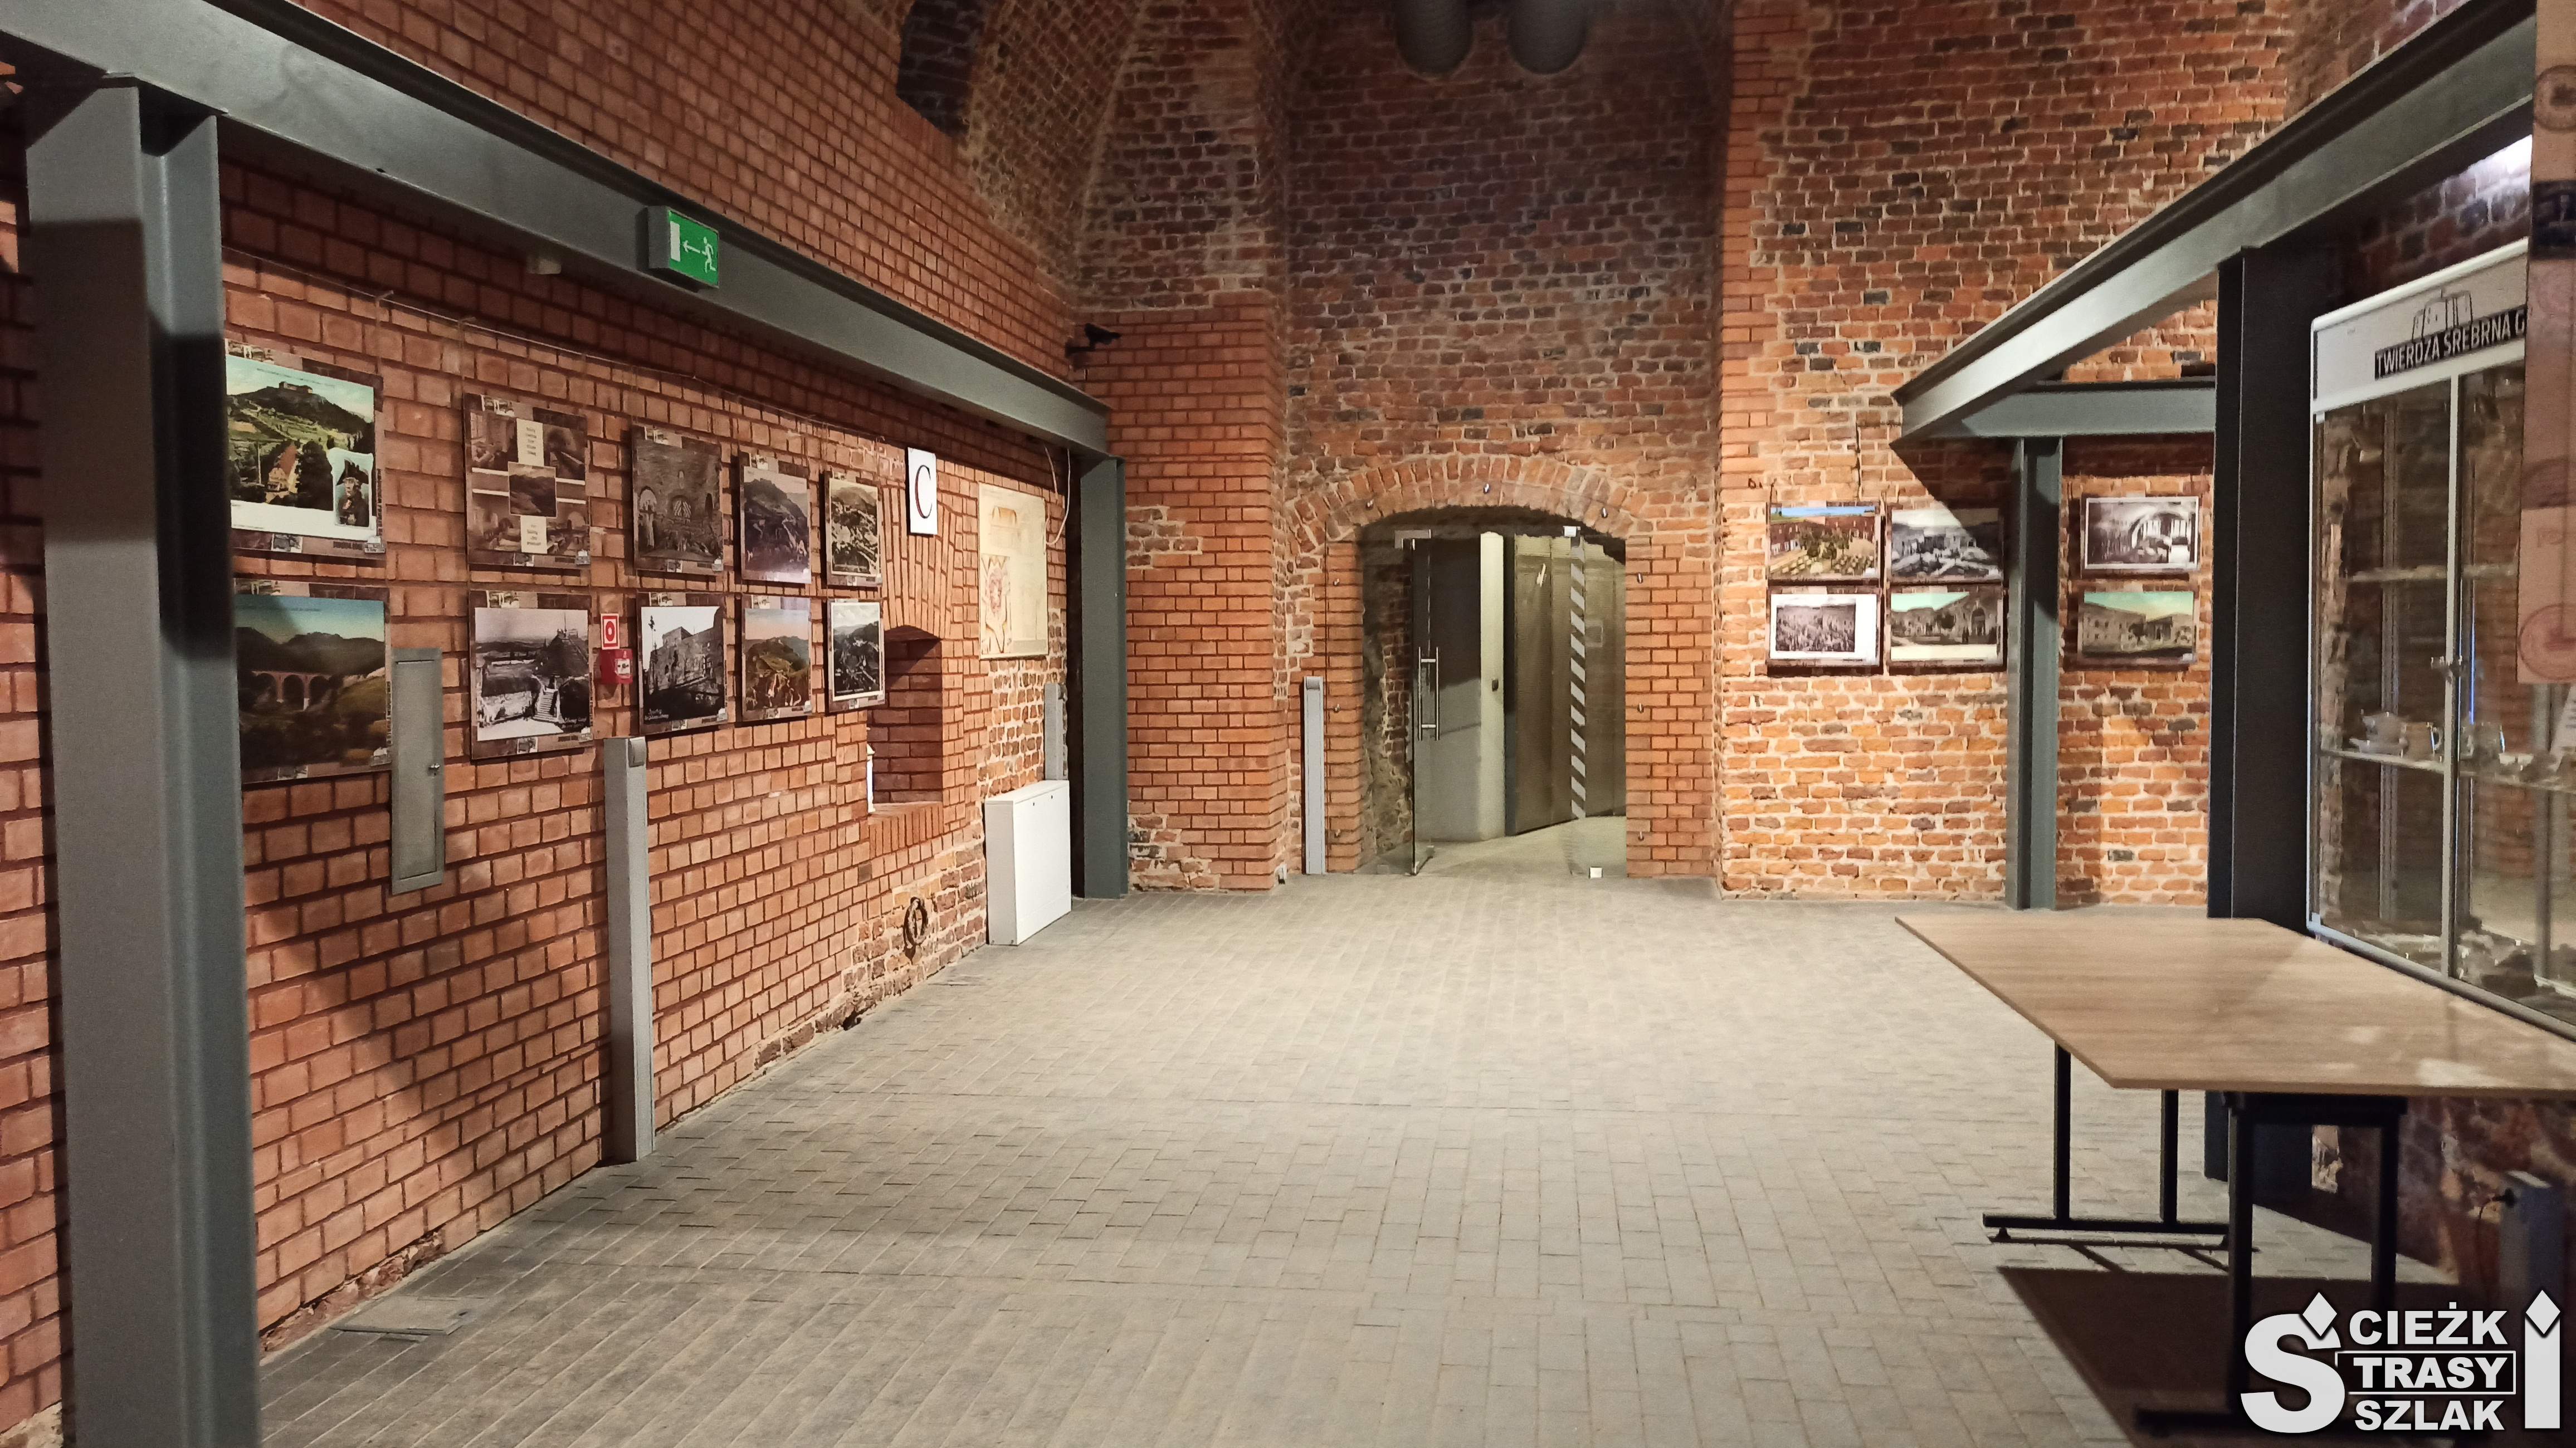 Podziemia Twierdzy Srebrna Góra z galerią zdjęć na ceglanej ścianie i szklanych regałach przed łukowatym przejściem